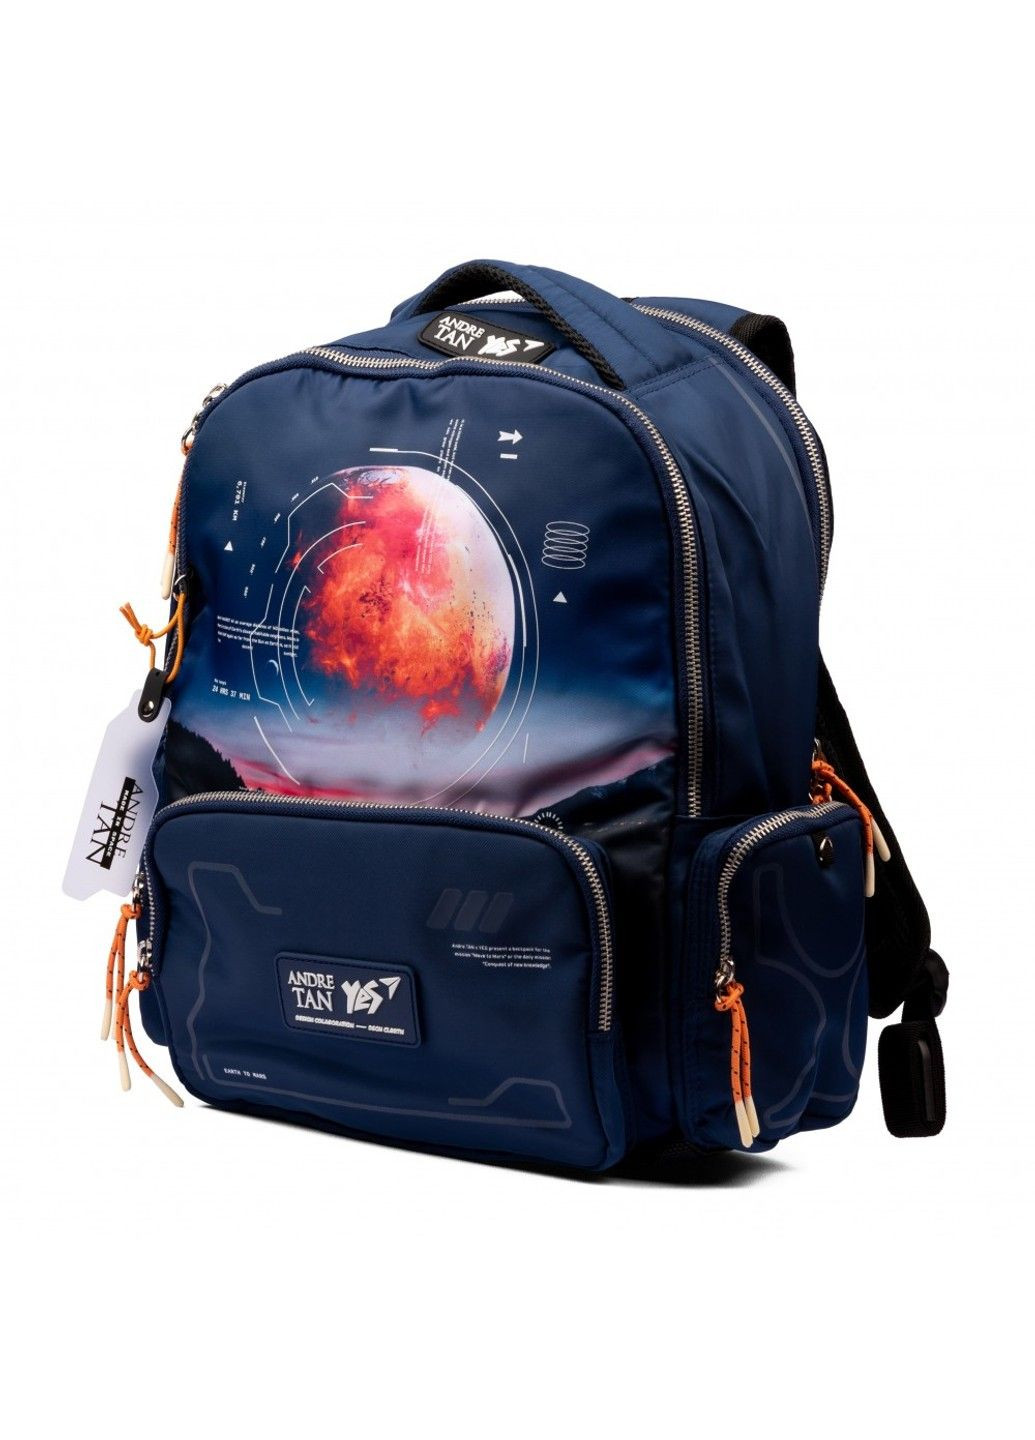 Рюкзак школьный для младших классов TS-93 by Andre Tan Space dark blue Yes (278404463)